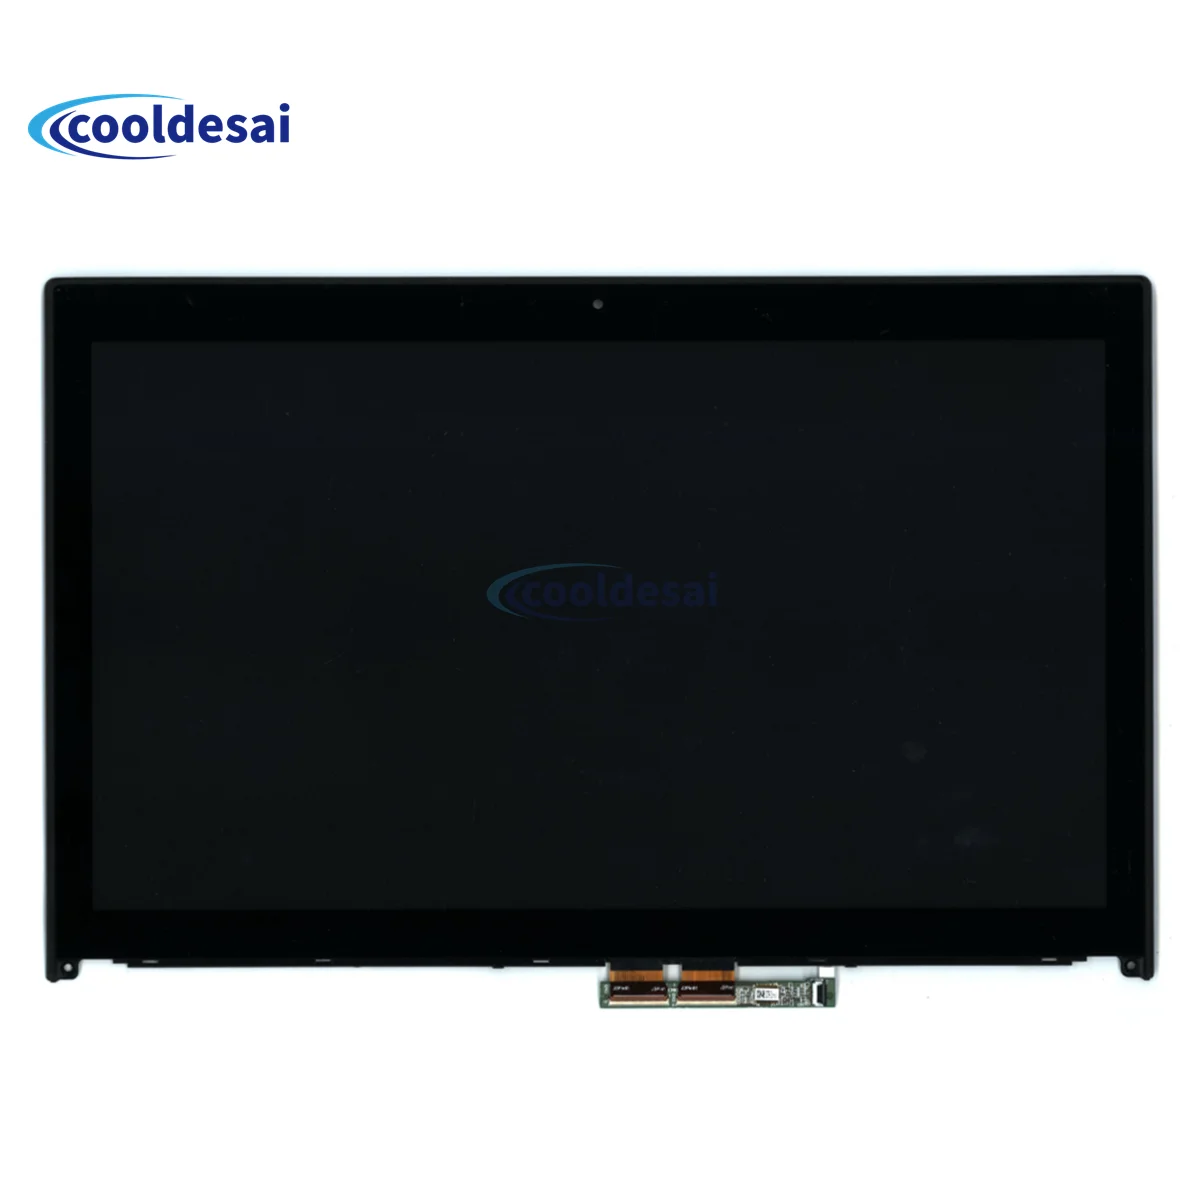 

New Original LCD Screen For Lenovo ThinkPad P50 P51 LCD screen panel FHD 1920*11080 40pin With Touch FRU 01AV331 01AV358 01AV357